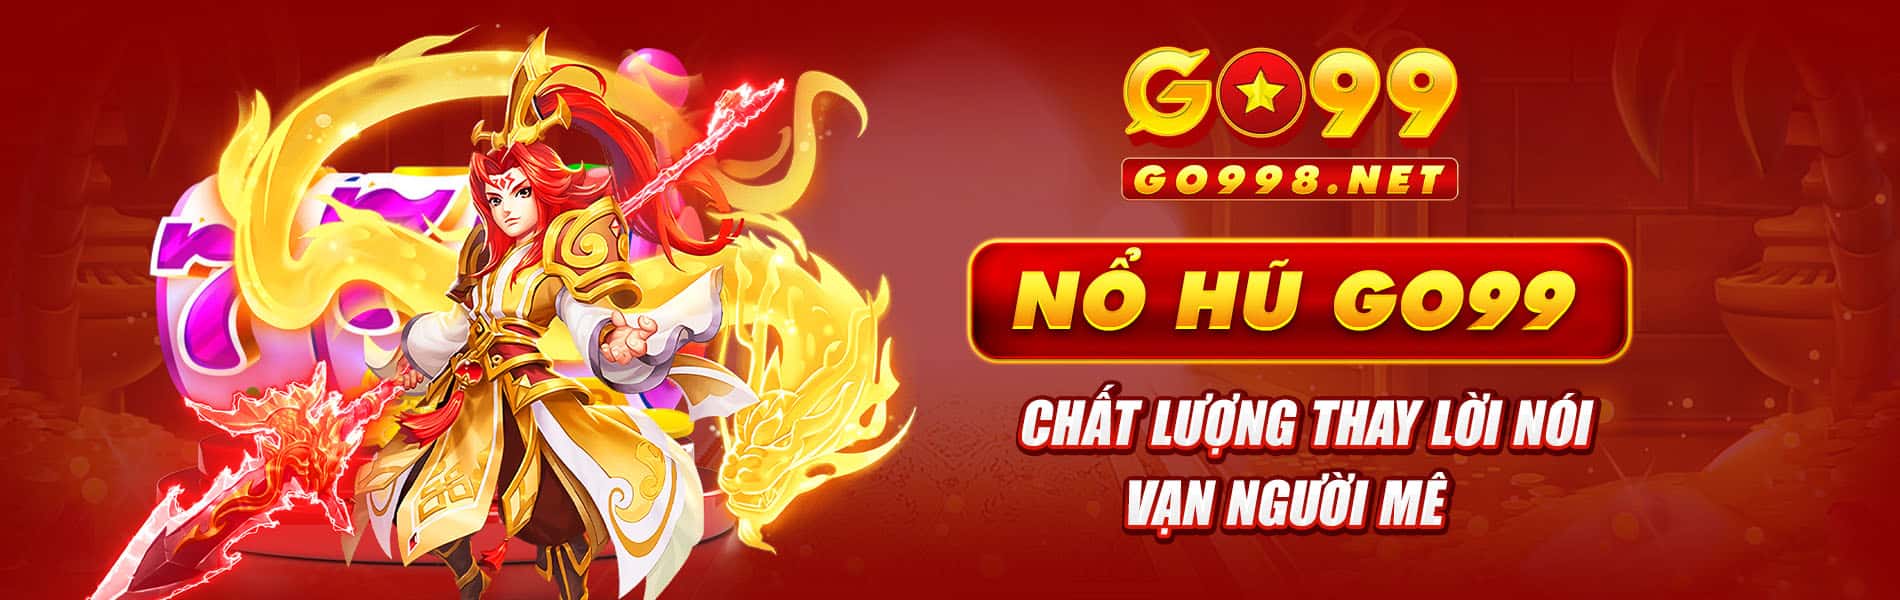 no-hu-go99-chat-luong-thay-loi-noi-van-nguoi-me